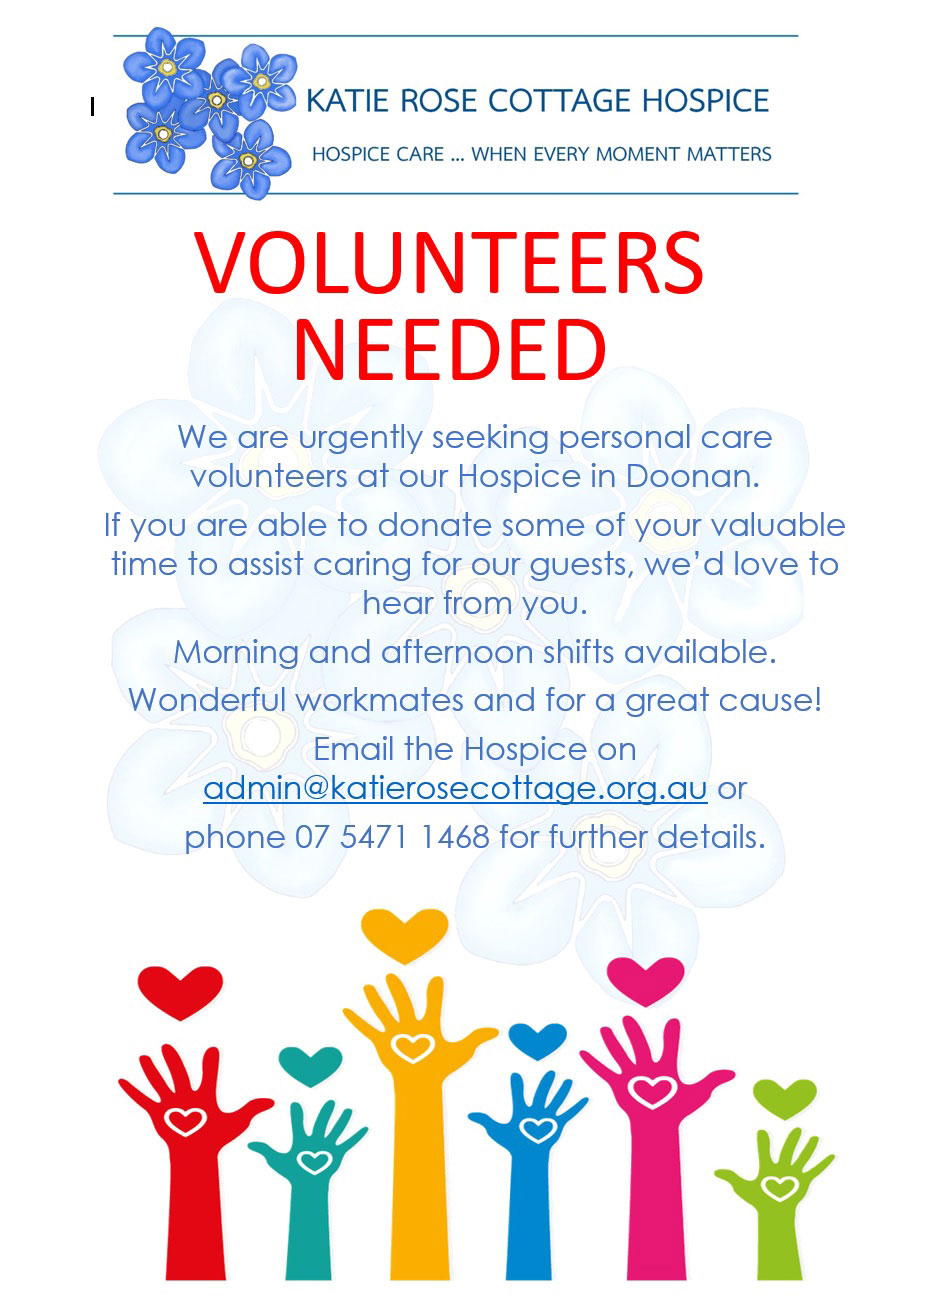 Volunteers needed for Katie Rose Hospice in Doonan